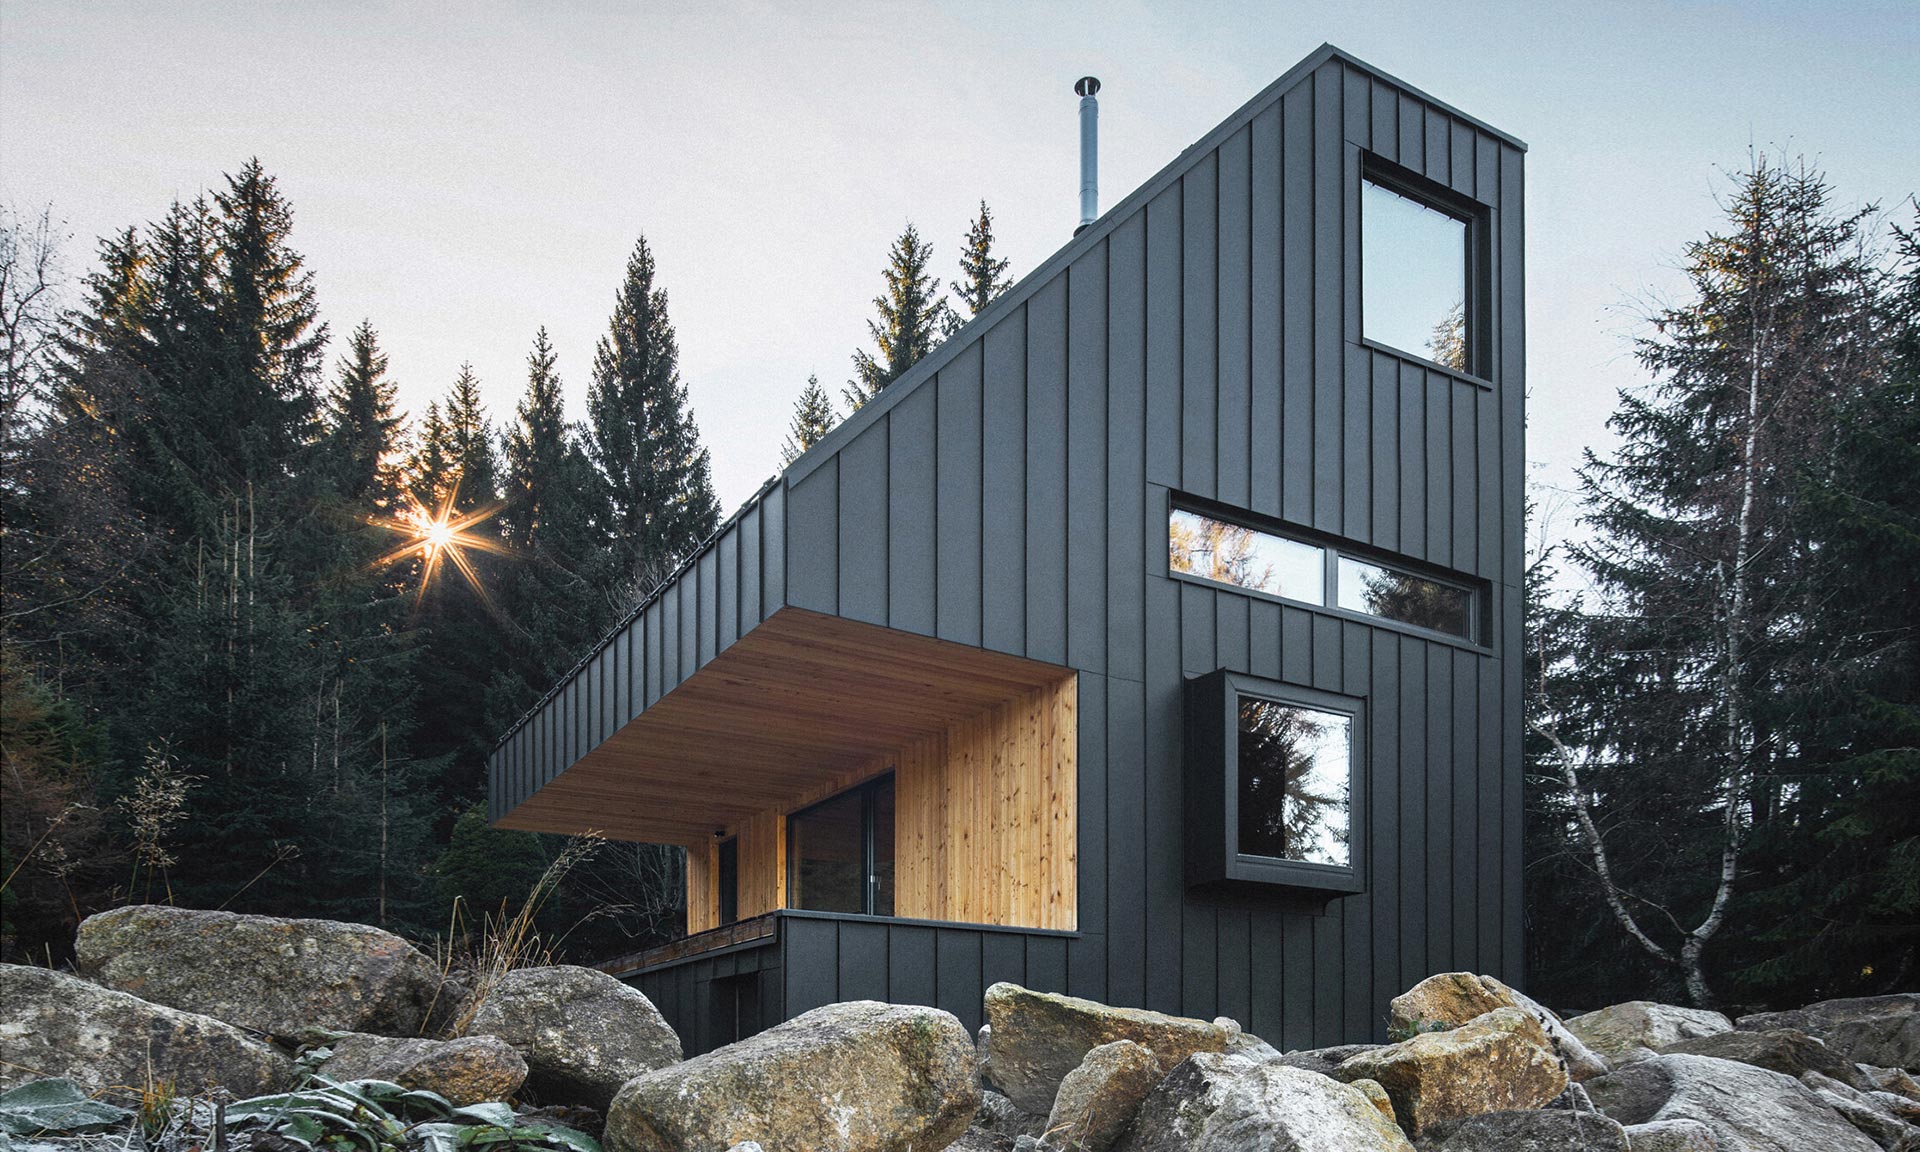 Horská chata Nové Hamry má černou fasádu a tvary inspirované rozhlednou